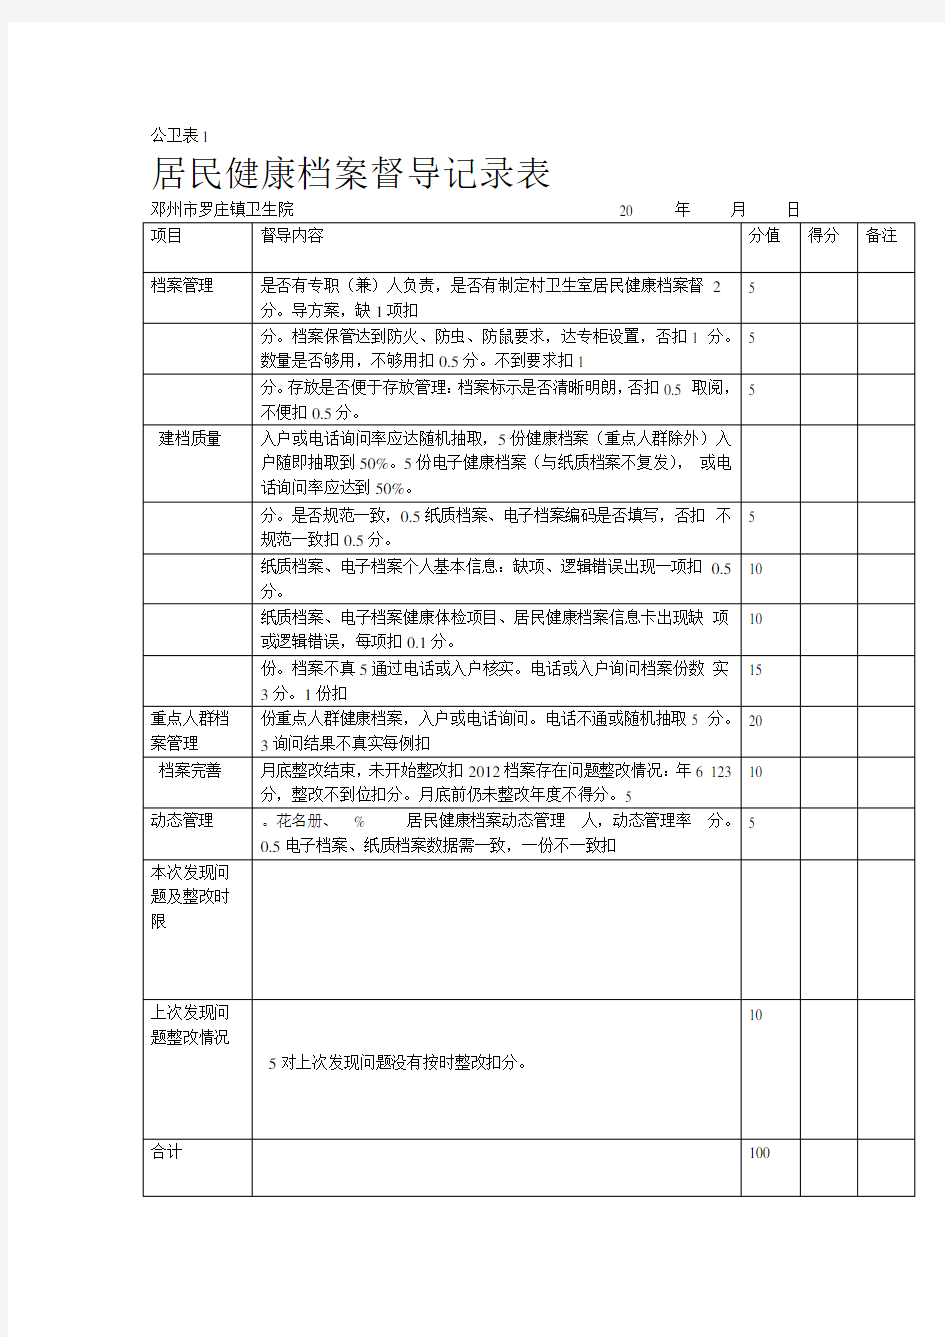 罗庄镇村级公共卫生考核督导记录表